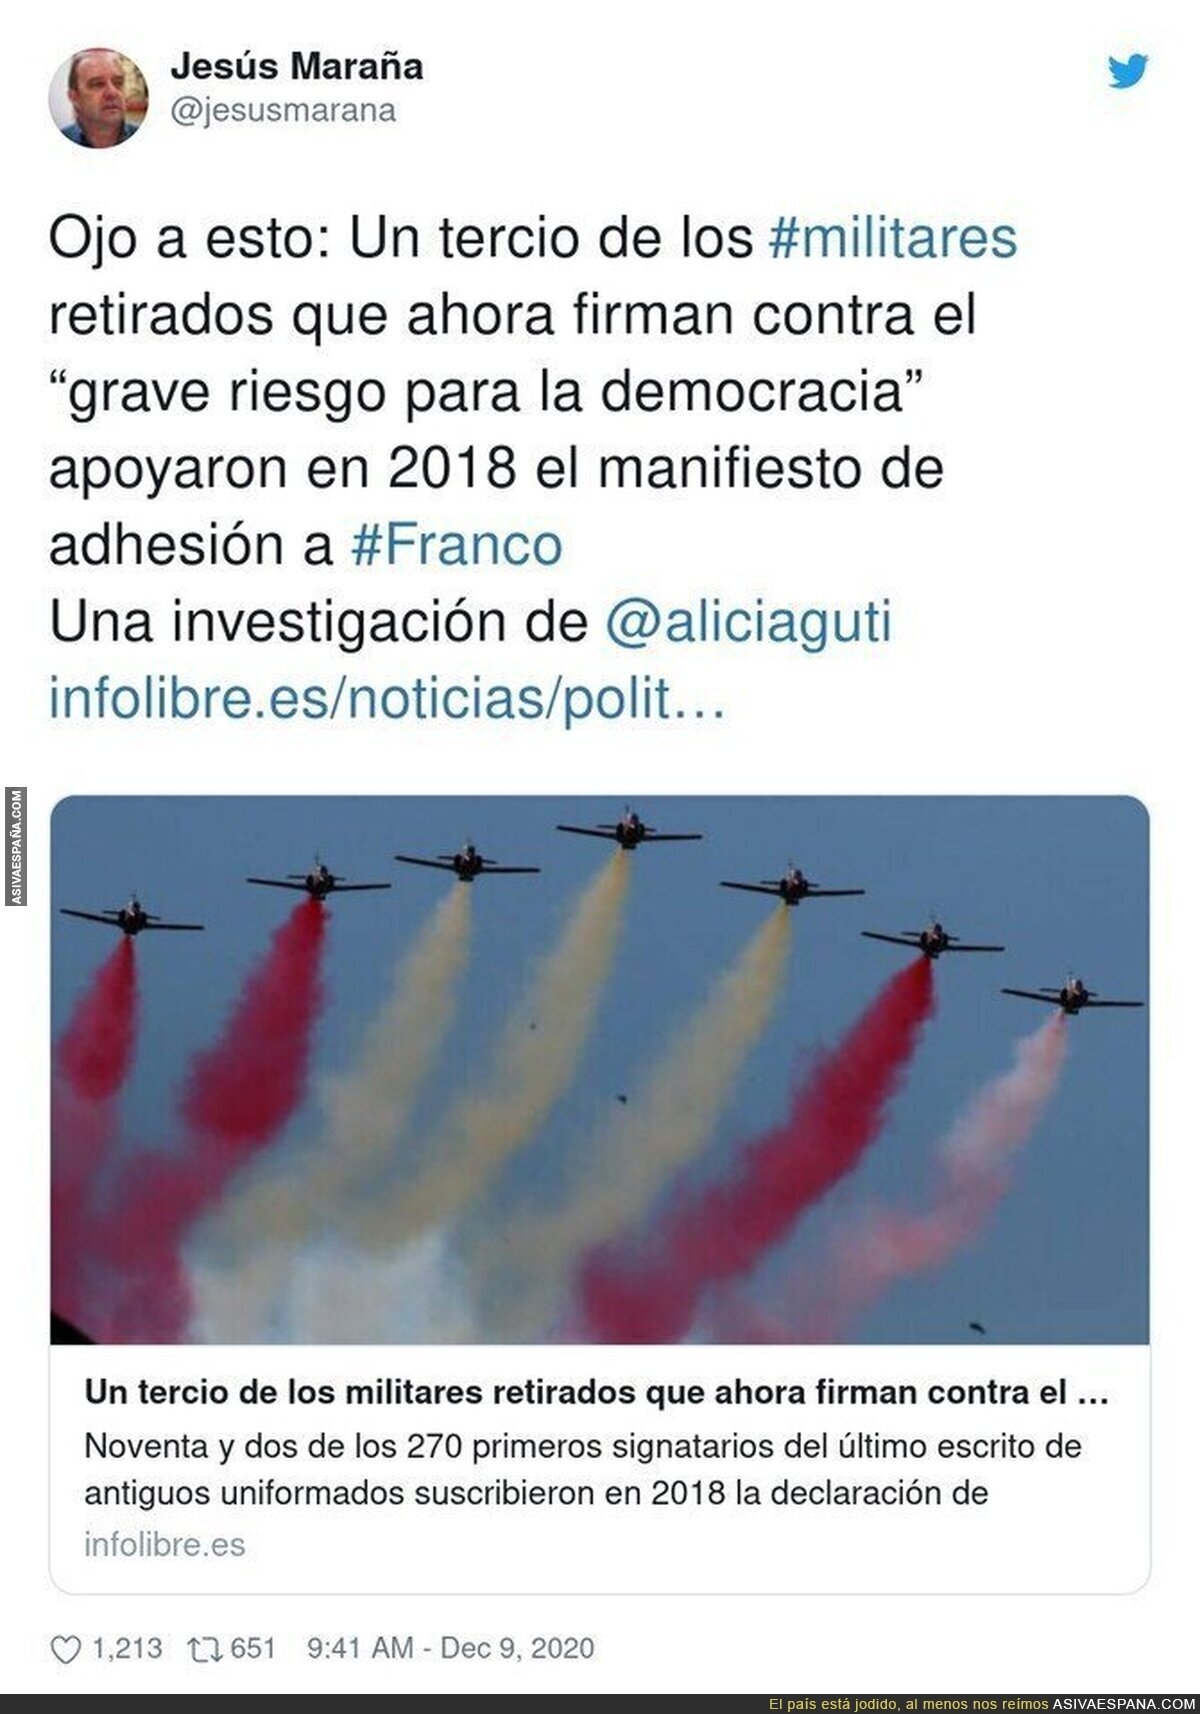 Un auténtico peligro los militares retirados en Españañ